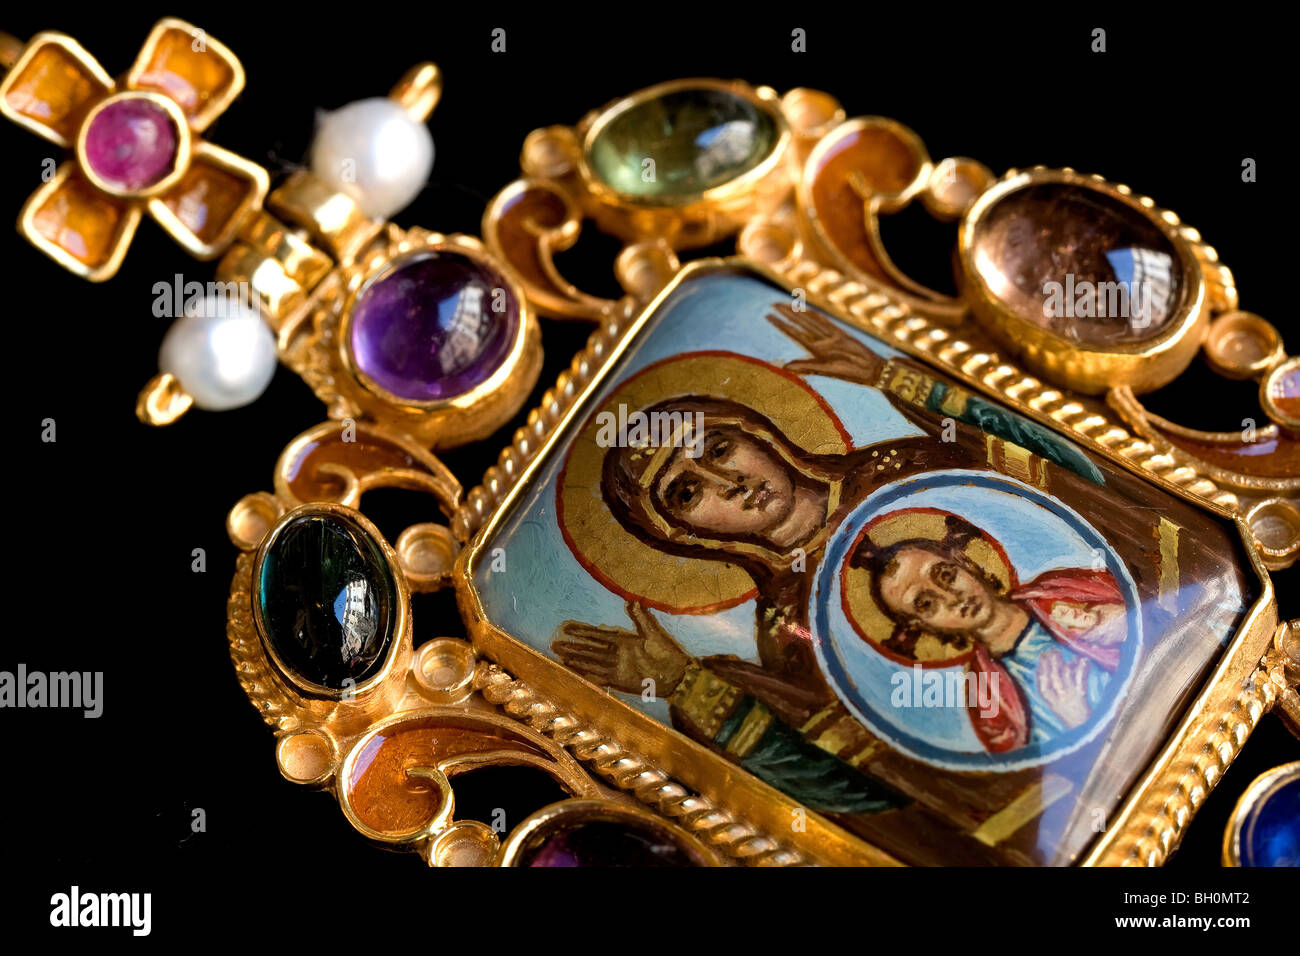 Italien, Rom, Schmuck mit Heiligen Bildern Percossi Papi, Religion, Gold,  Steinen prezionse Stockfotografie - Alamy